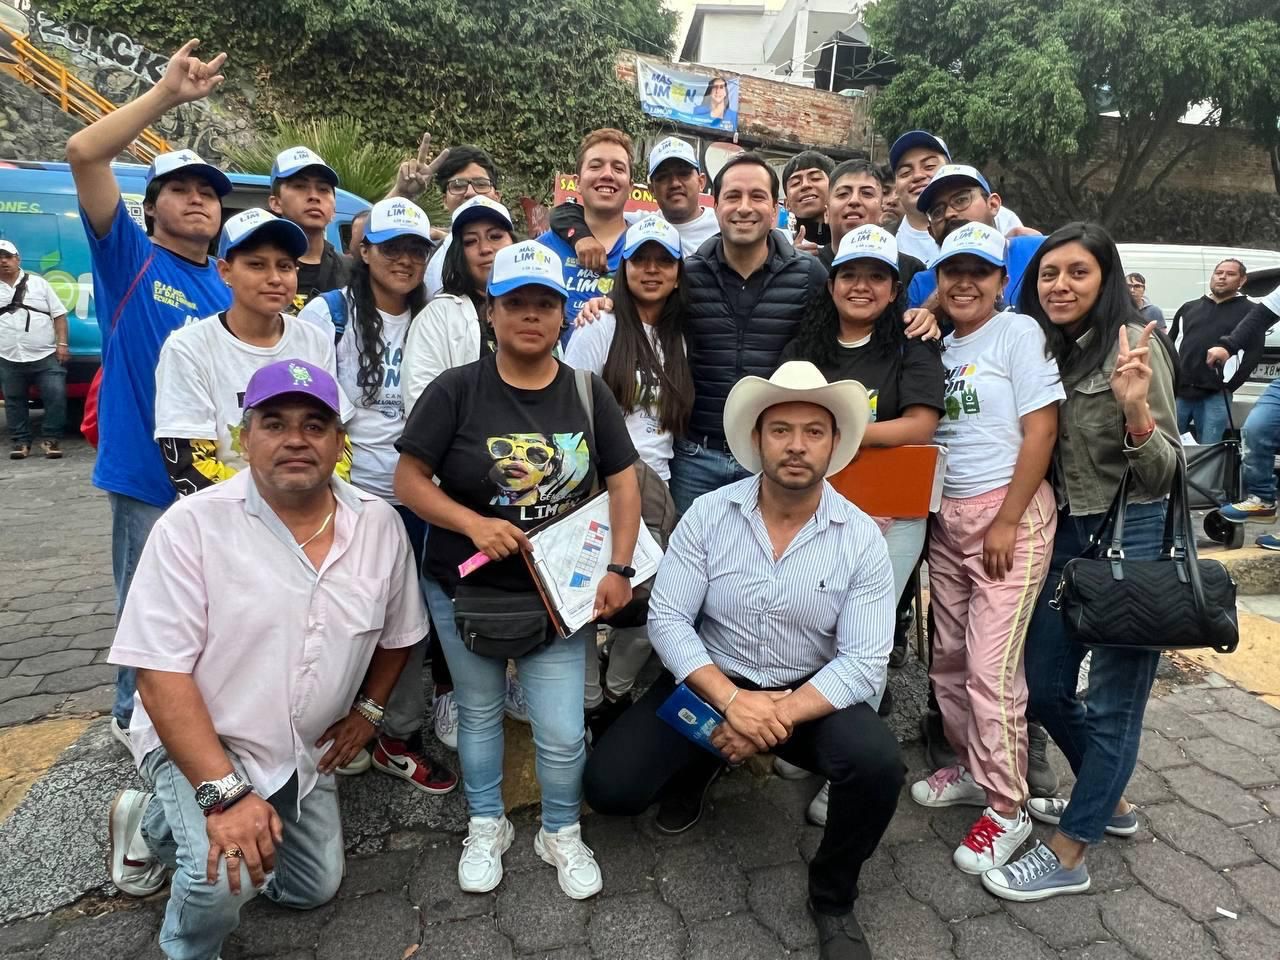 Vila empieza a hacer campaña, su primer acto en la Ciudad de México